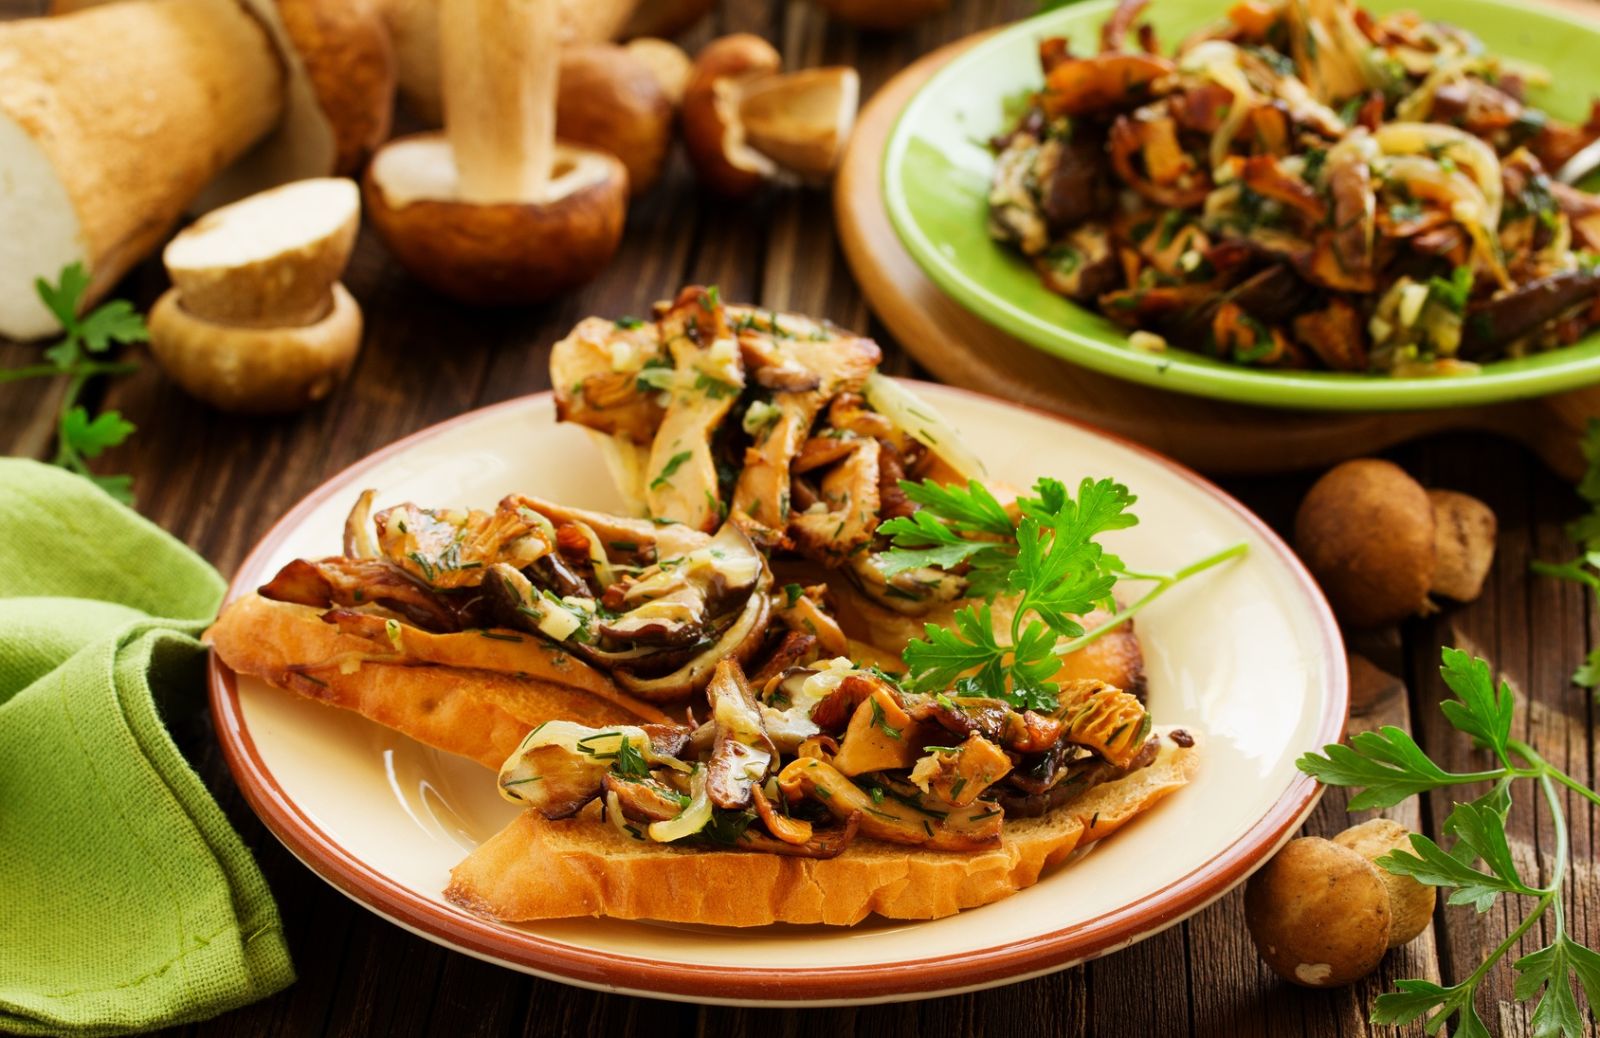 Lusso in tavola per tutti: il cibo pronto diventa gourmet se la bruschetta si profuma di salsa ai funghi